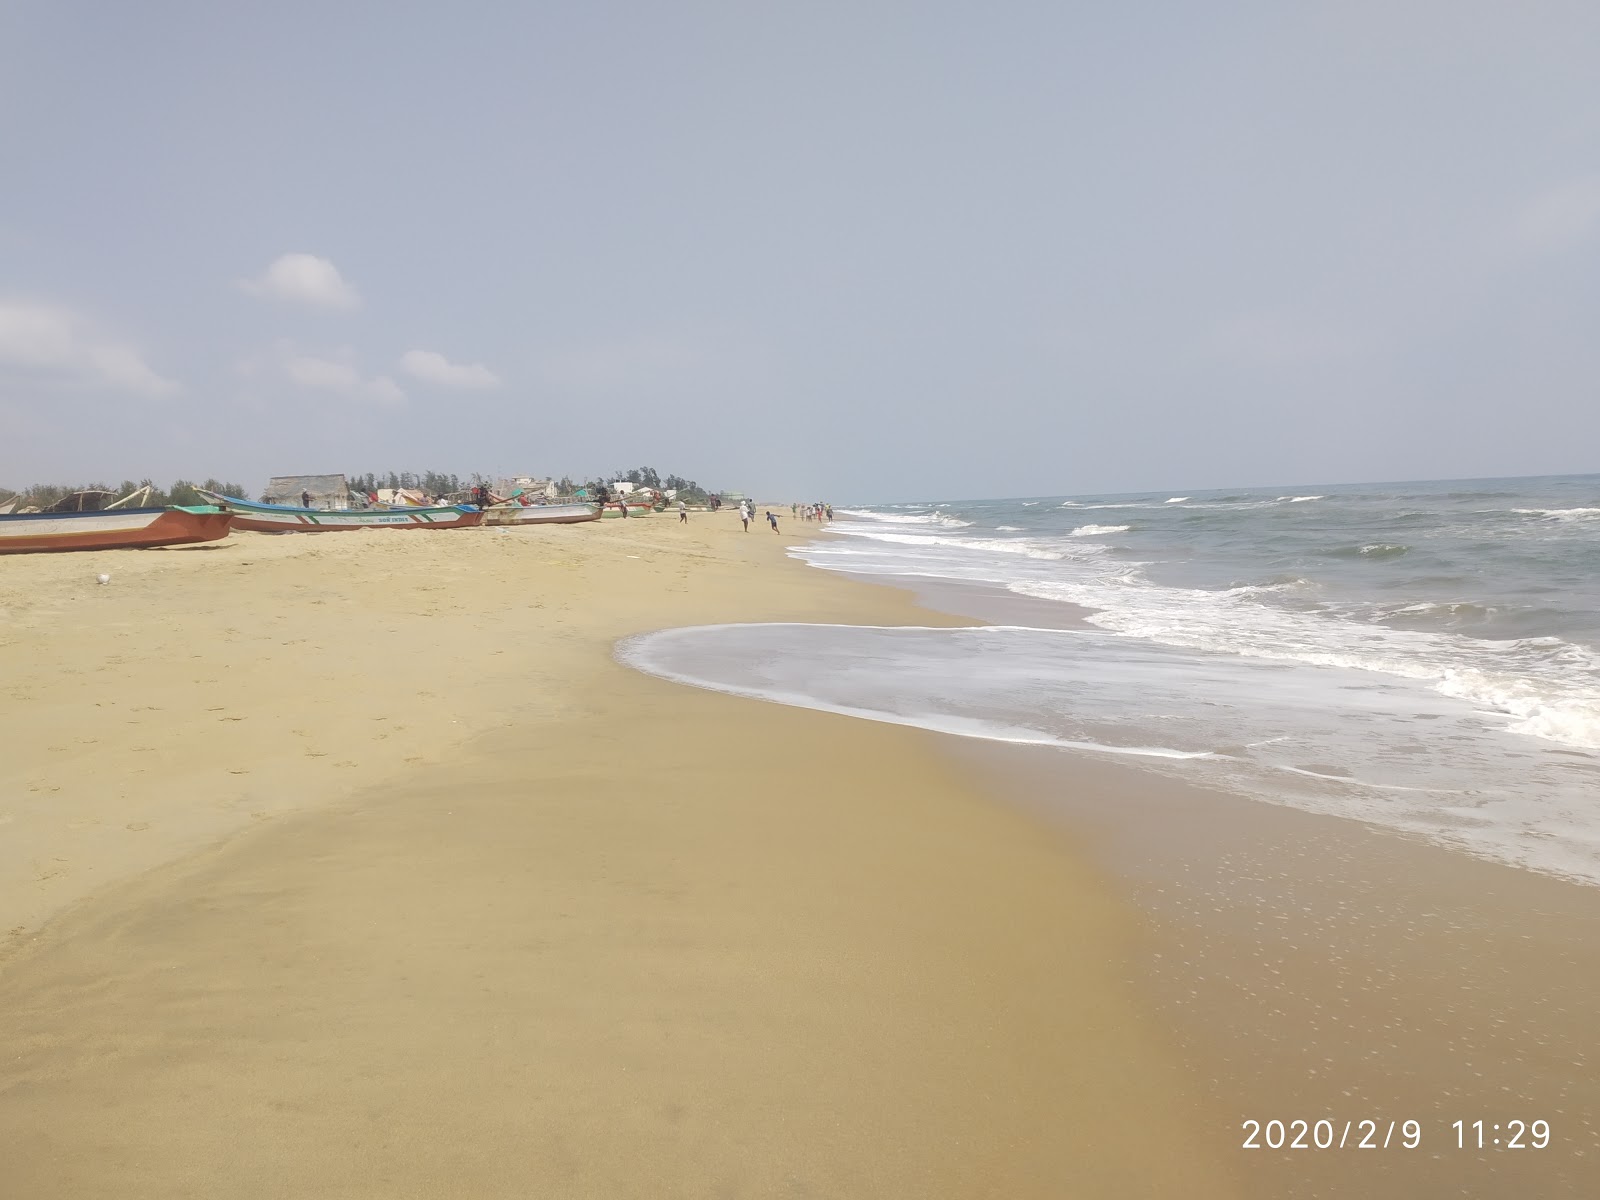 Photo de Pattipulam Beach - endroit populaire parmi les connaisseurs de la détente